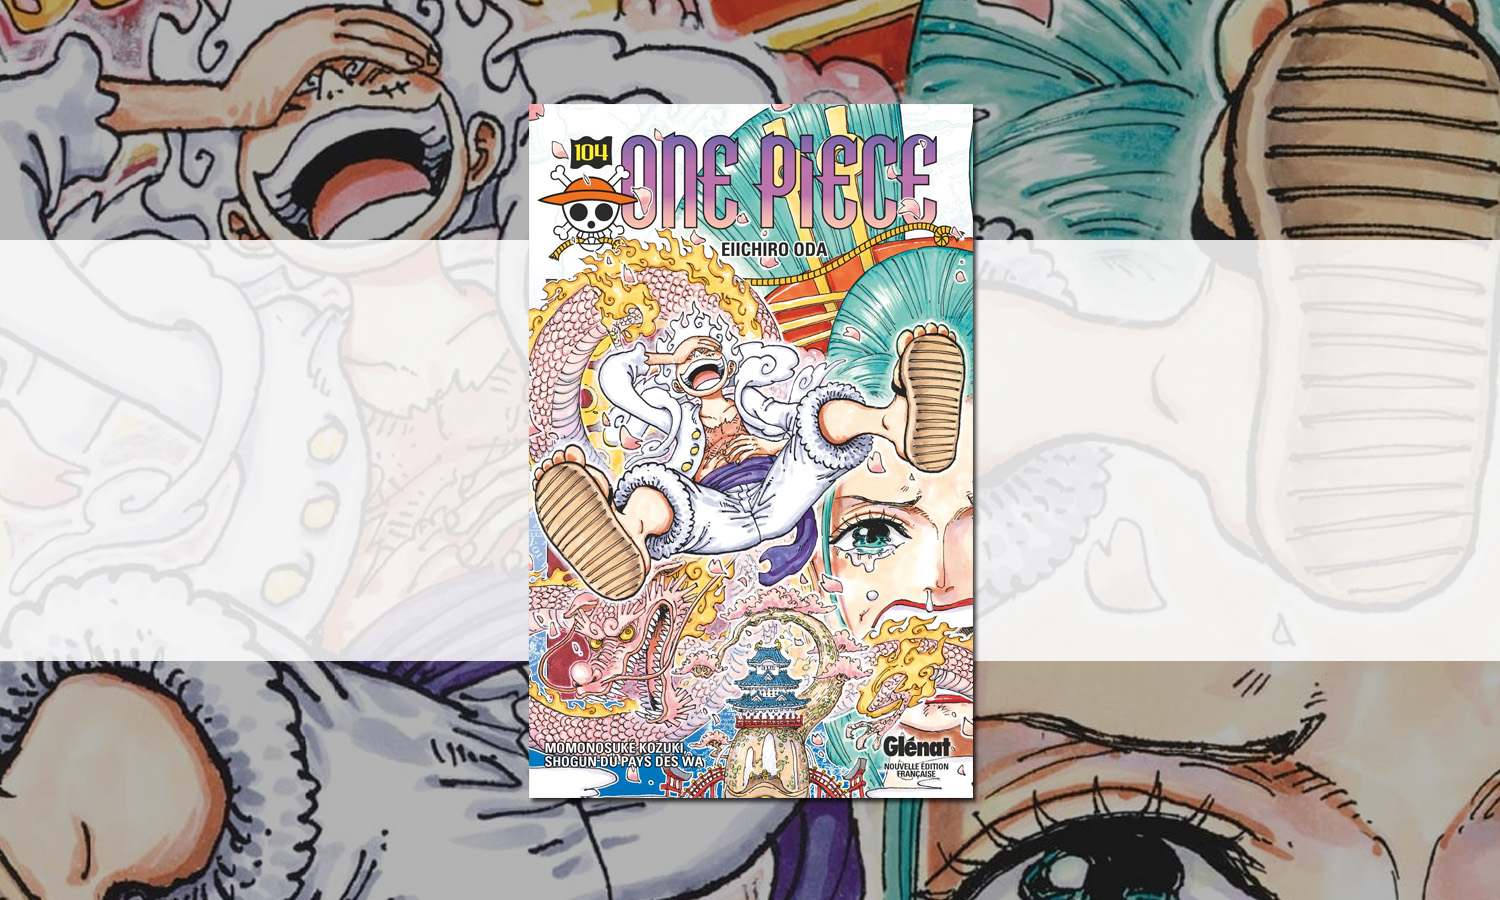 One Piece Tome 104 Édition Originale : la voici !